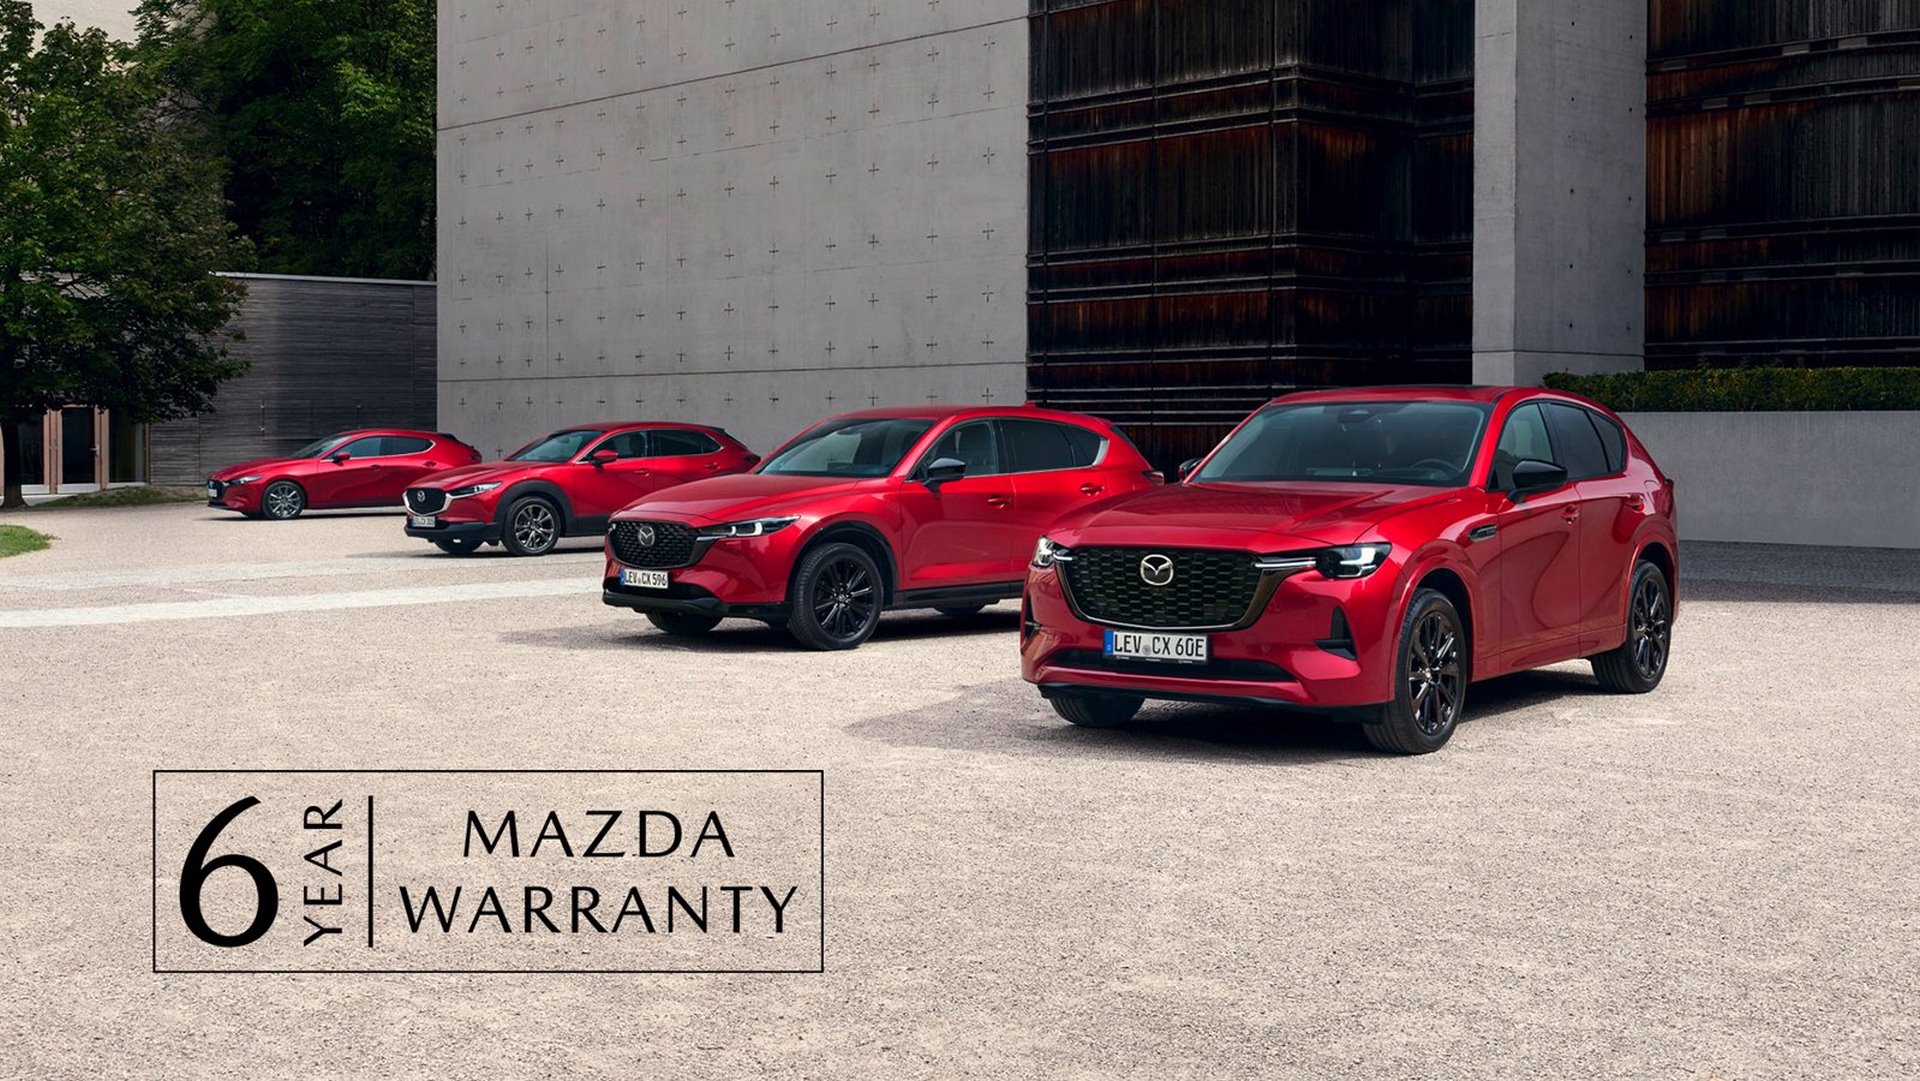 Mazda wprowadza sześcioletnią gwarancję na nowe samochody